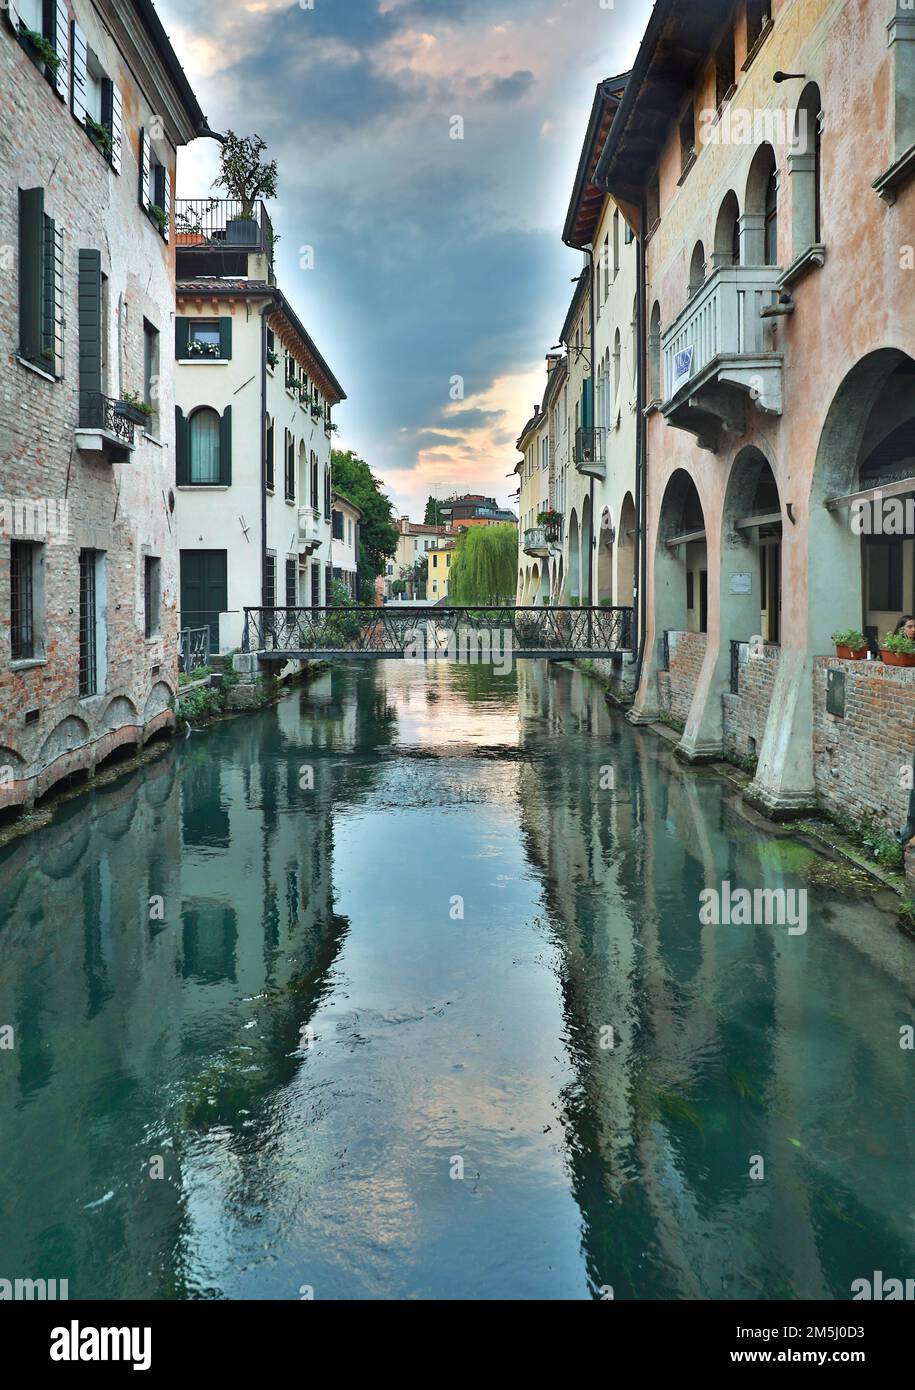 Treviso e Ponte Buranelli nel centro storico di Treviso sul canale del fiume Sile - città artistiche e storiche italiane da visitare Stock Photo